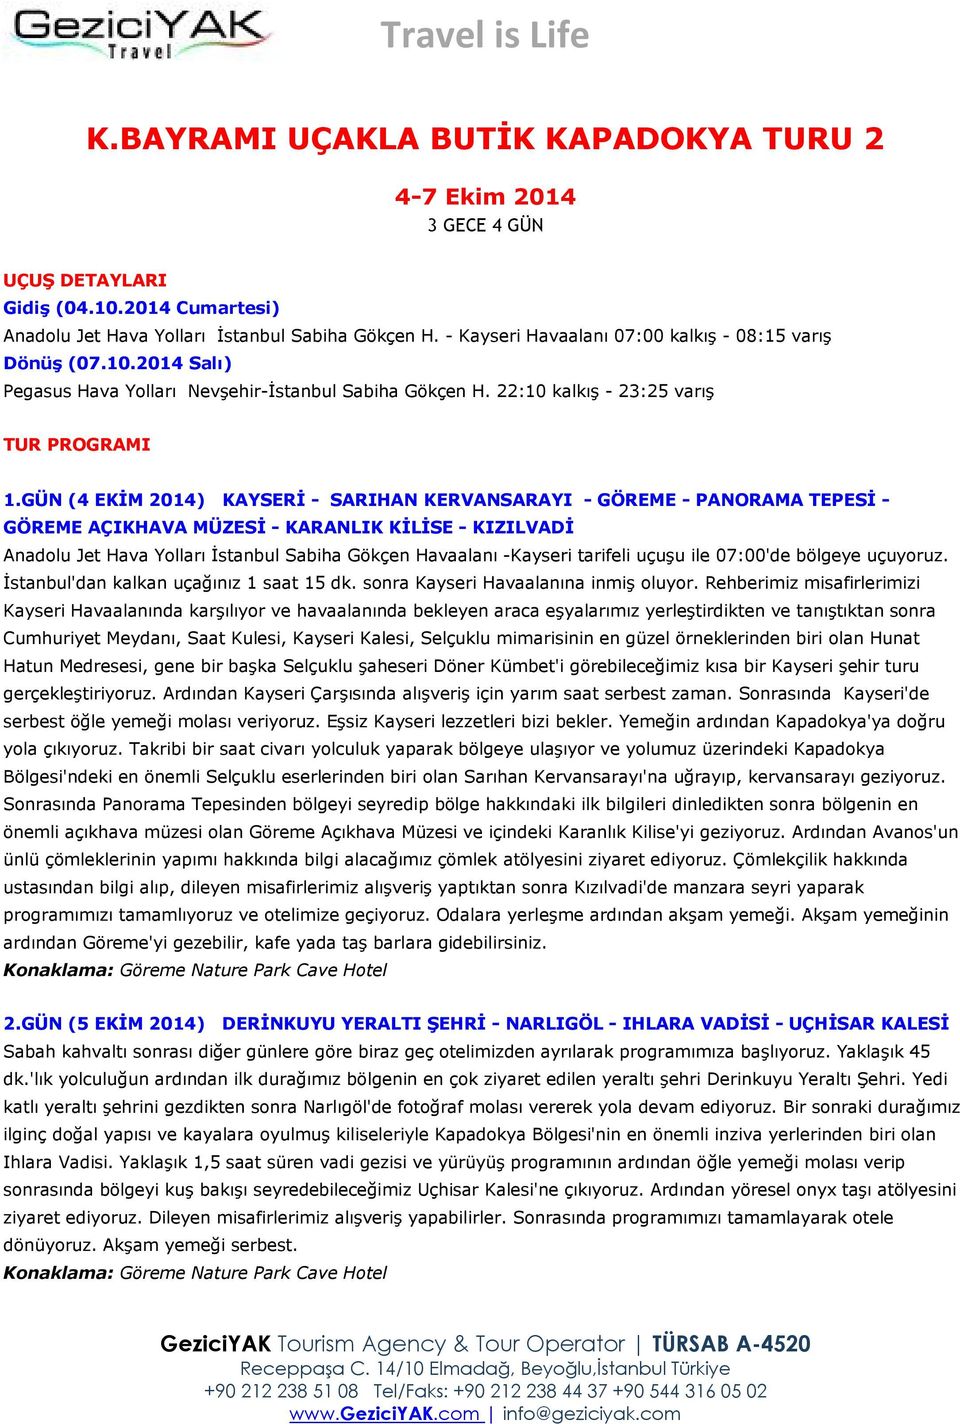 GÜN (4 EKİM 2014) KAYSERİ - SARIHAN KERVANSARAYI - GÖREME - PANORAMA TEPESİ - GÖREME AÇIKHAVA MÜZESİ - KARANLIK KİLİSE - KIZILVADİ Anadolu Jet Hava Yolları İstanbul Sabiha Gökçen Havaalanı -Kayseri